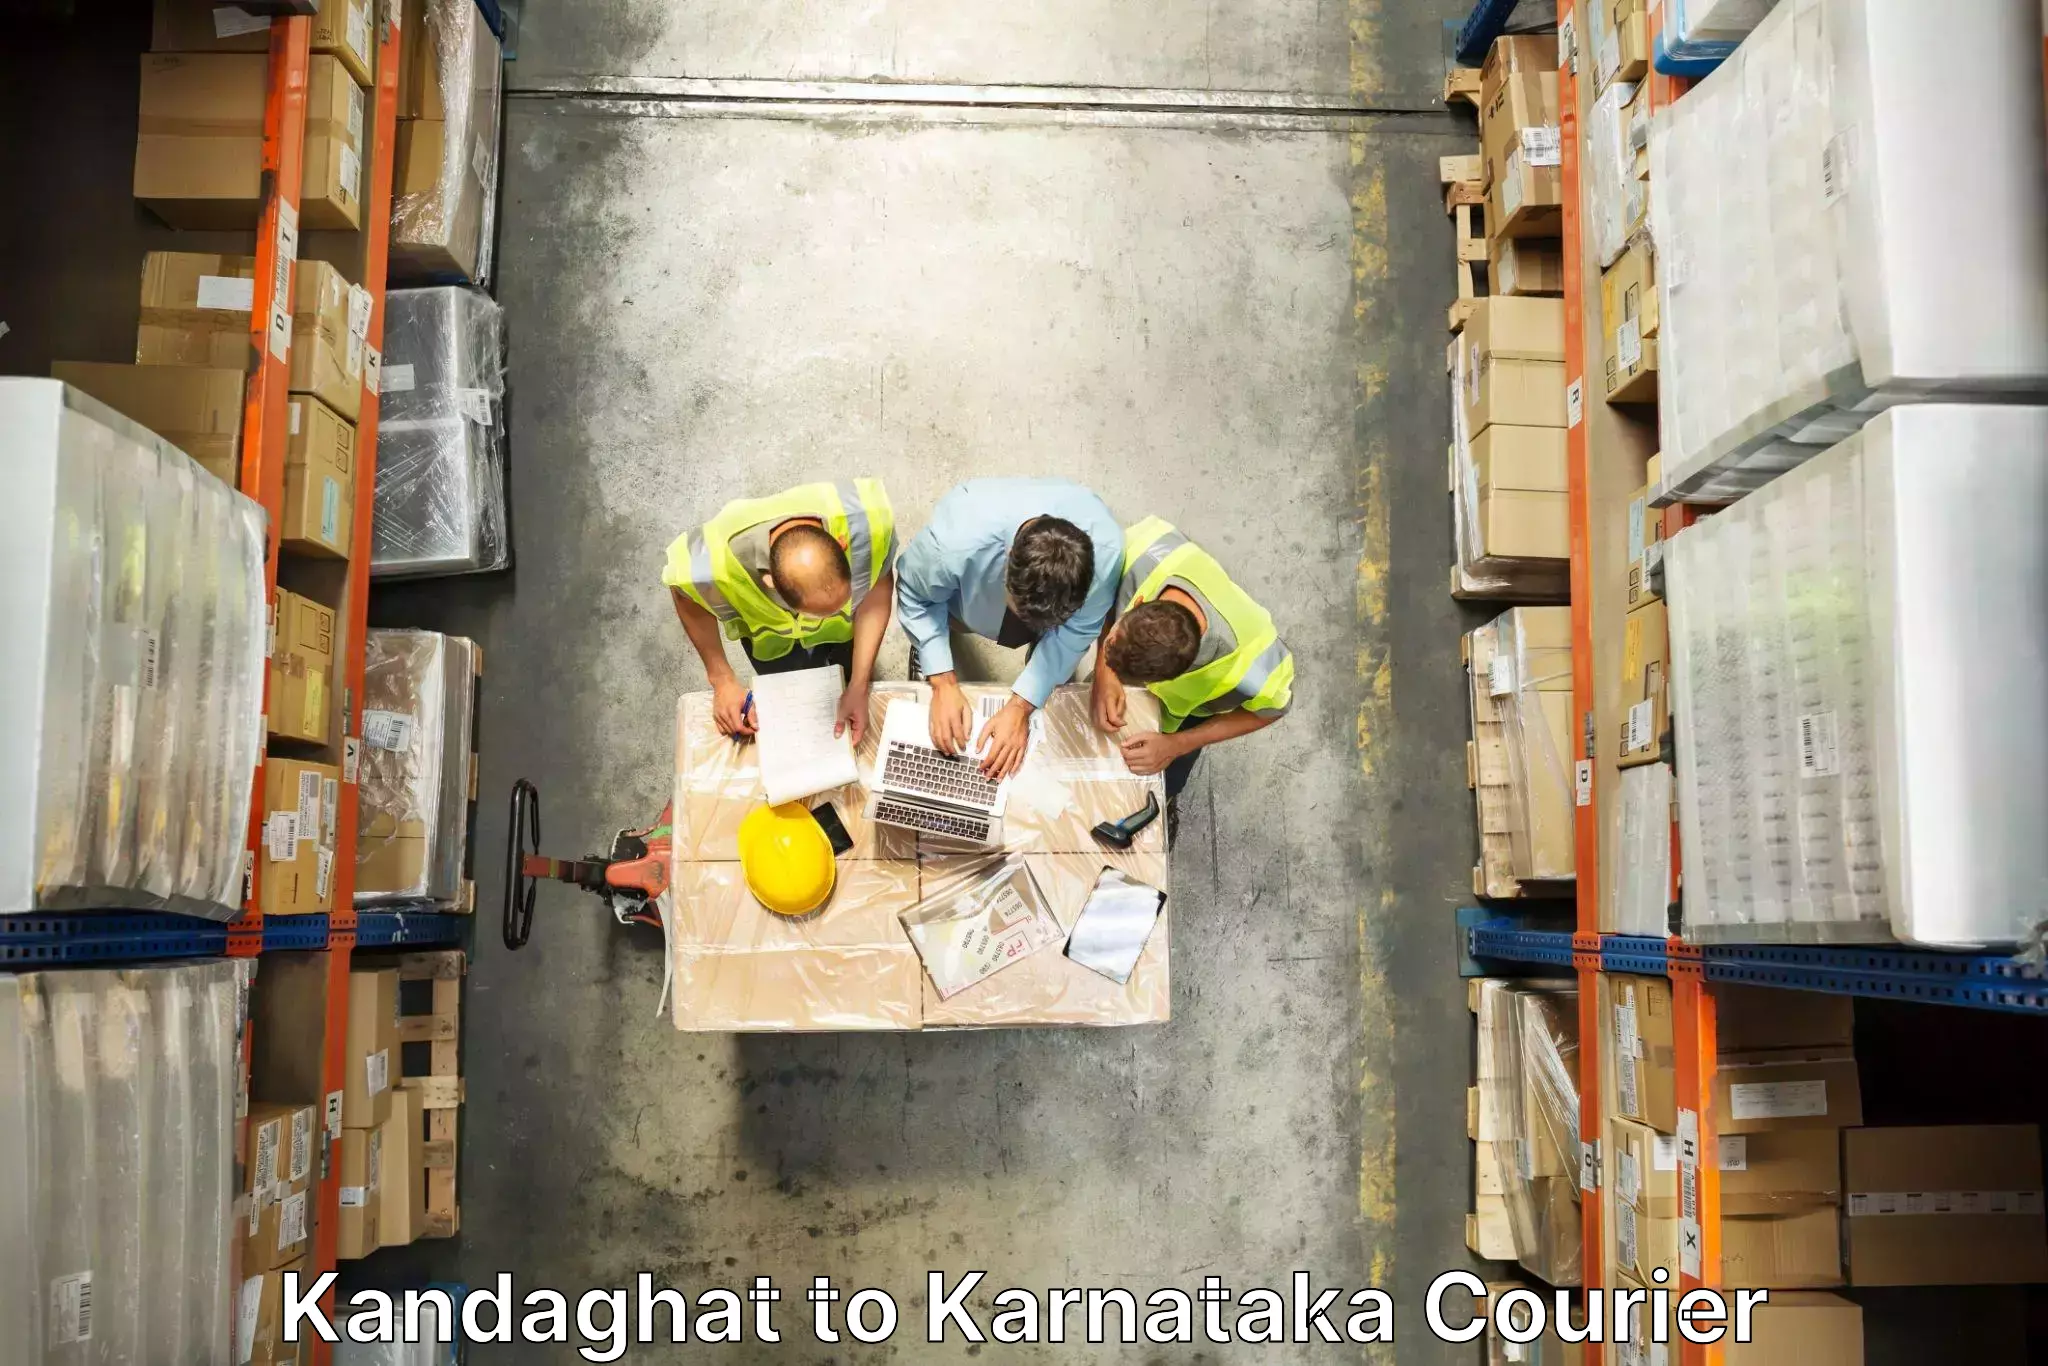 Furniture moving experts Kandaghat to Hoovina Hadagali